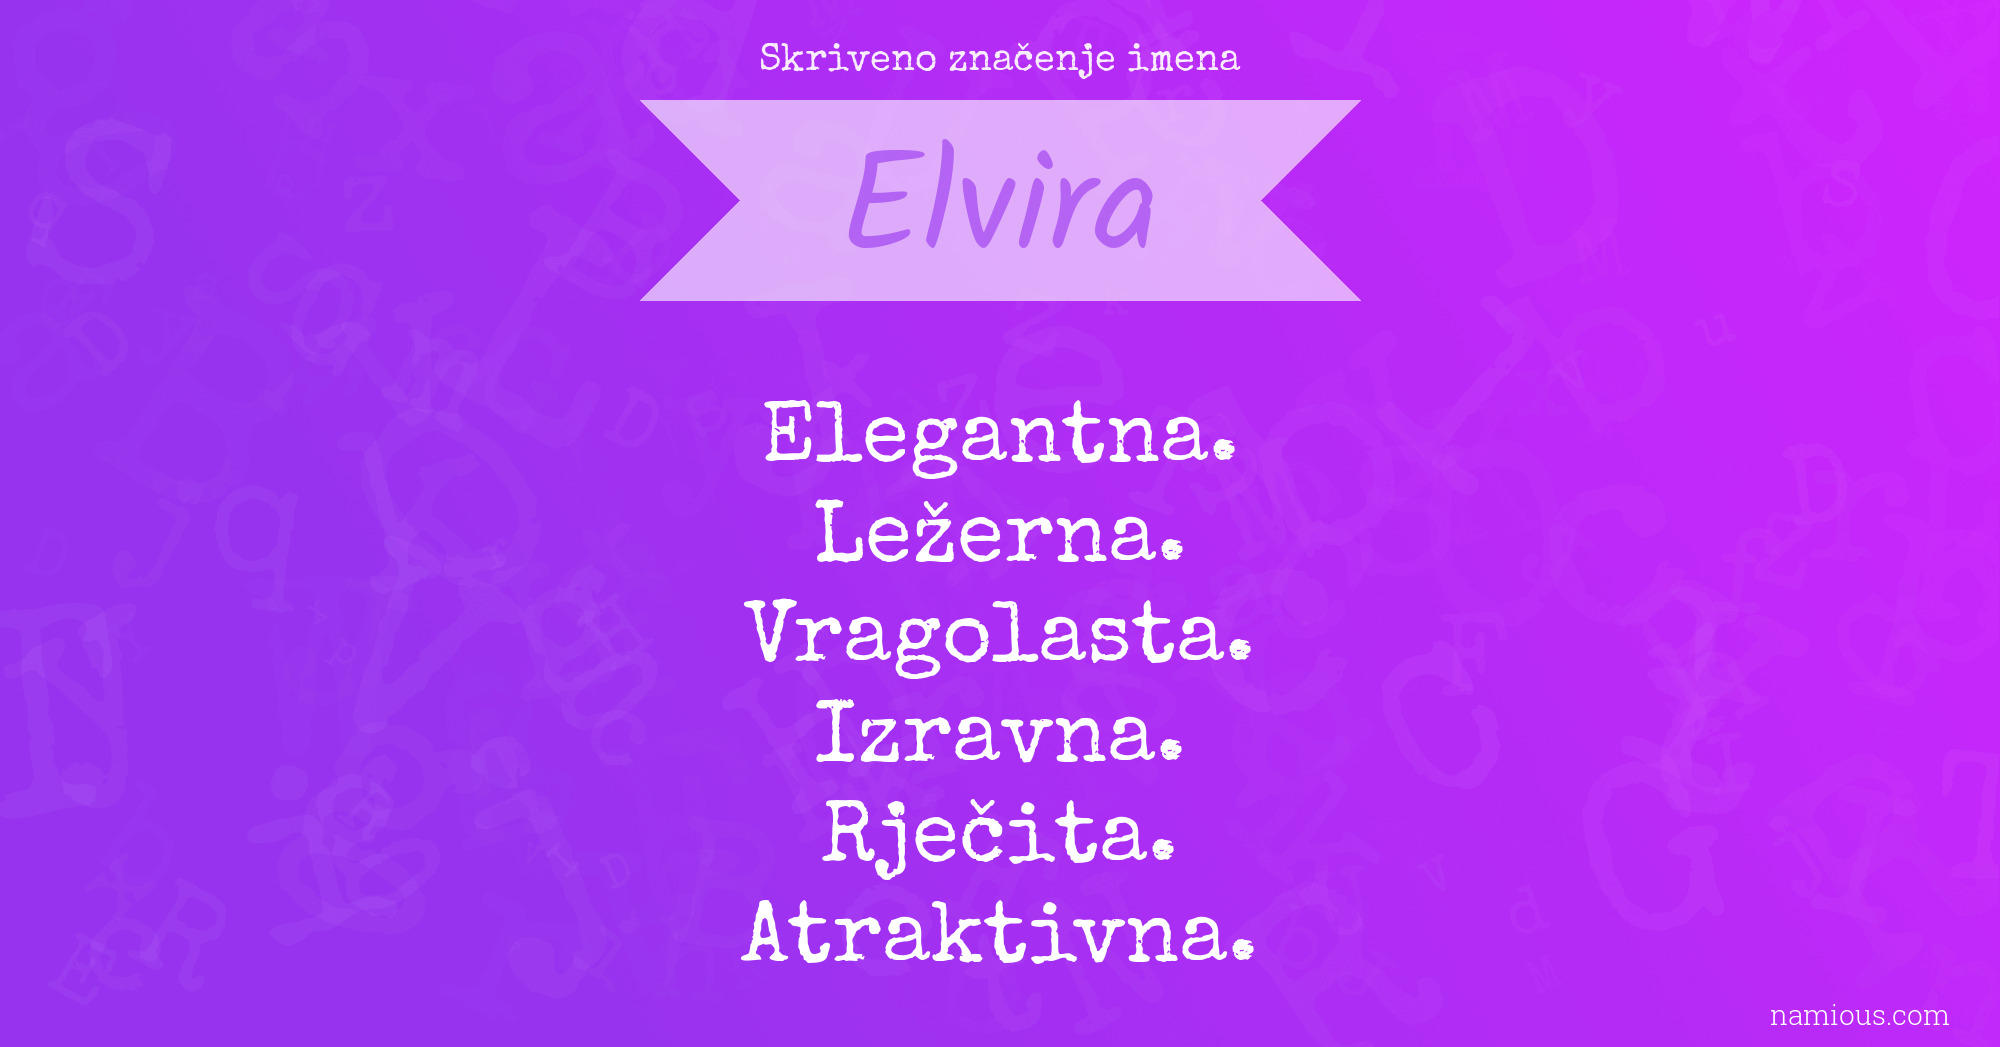 Skriveno značenje imena Elvira